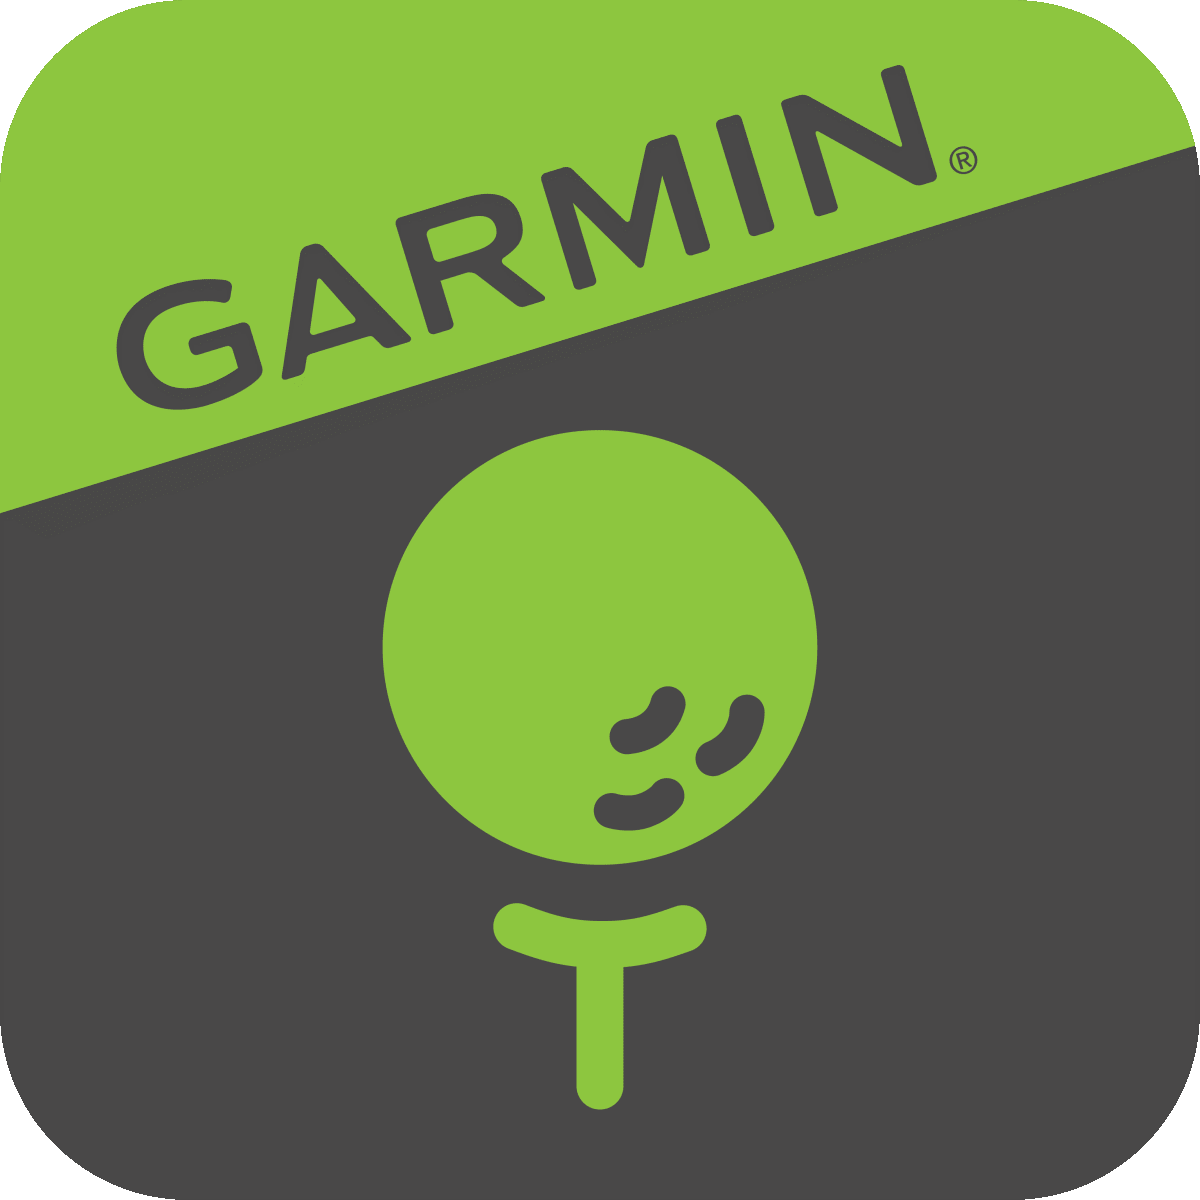 Garmin Golf App